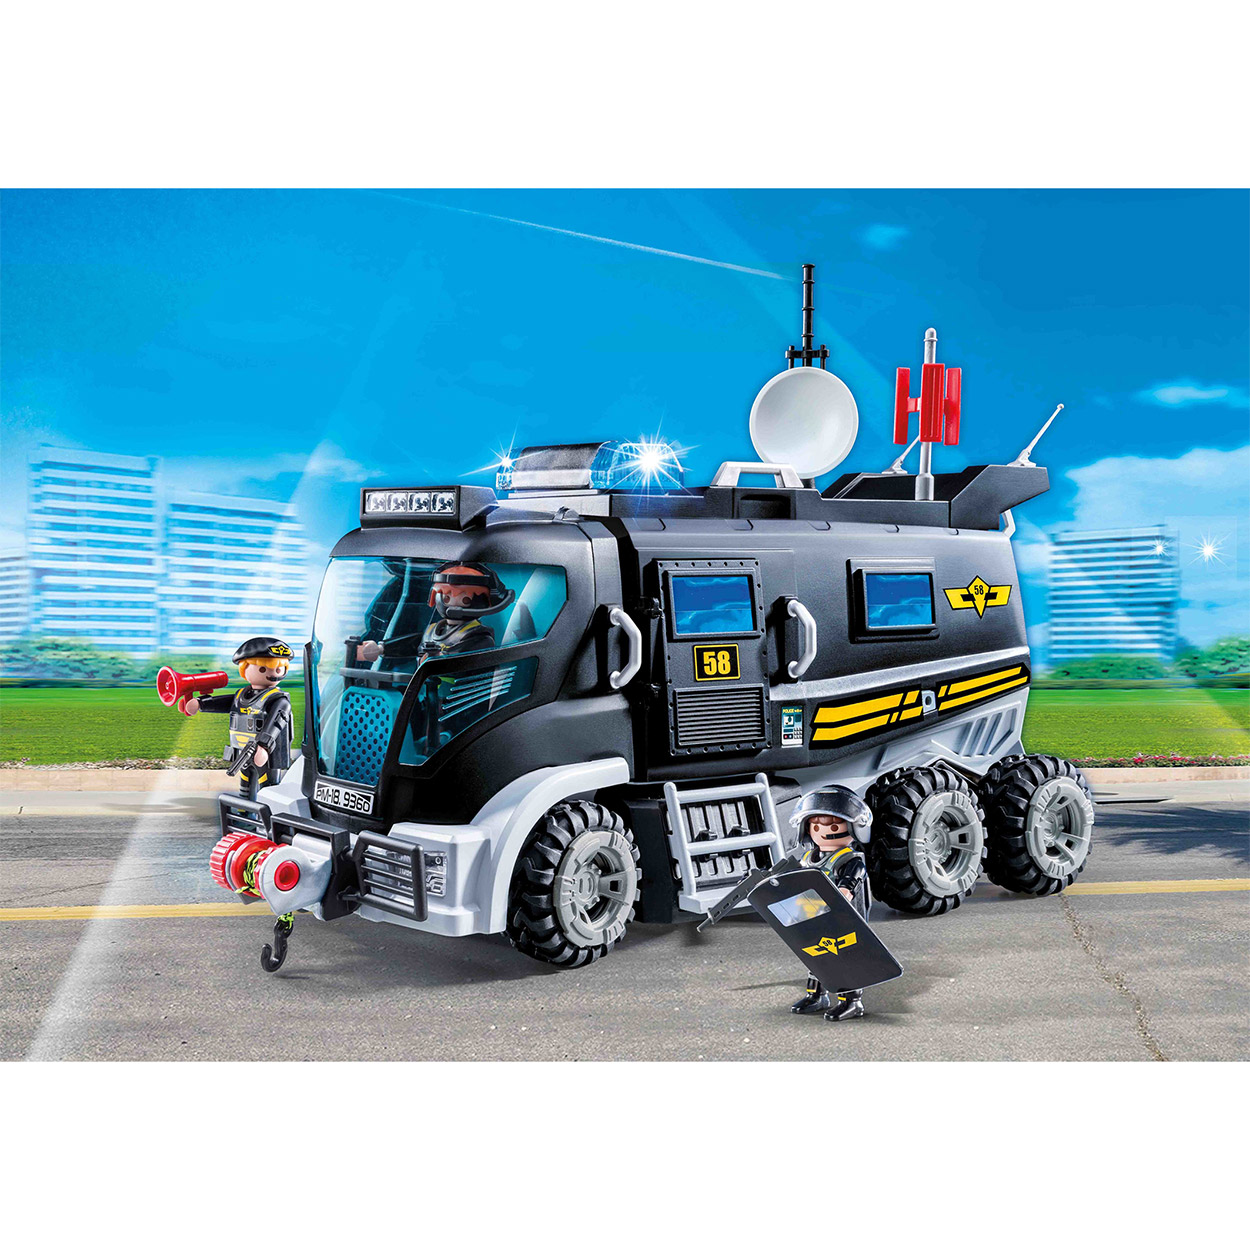 Playmobil 9360 SIE-Truck met Licht en Geluid